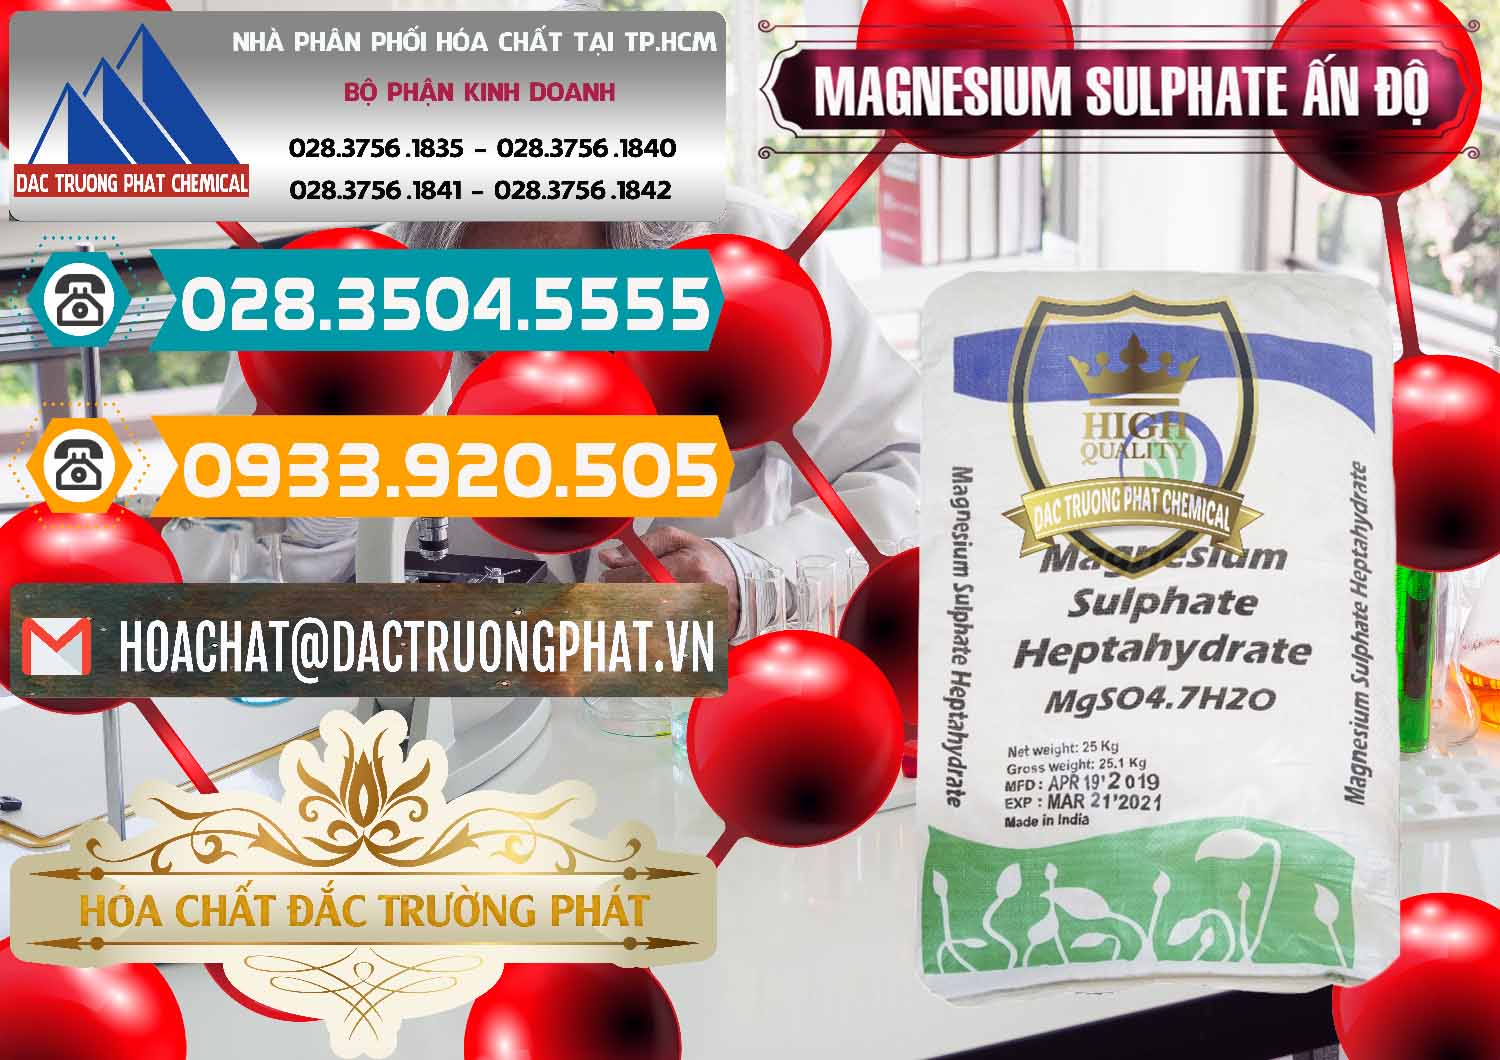 Nơi chuyên bán & phân phối MGSO4.7H2O – Magnesium Sulphate Heptahydrate Ấn Độ India - 0362 - Đơn vị chuyên phân phối _ bán hóa chất tại TP.HCM - congtyhoachat.vn